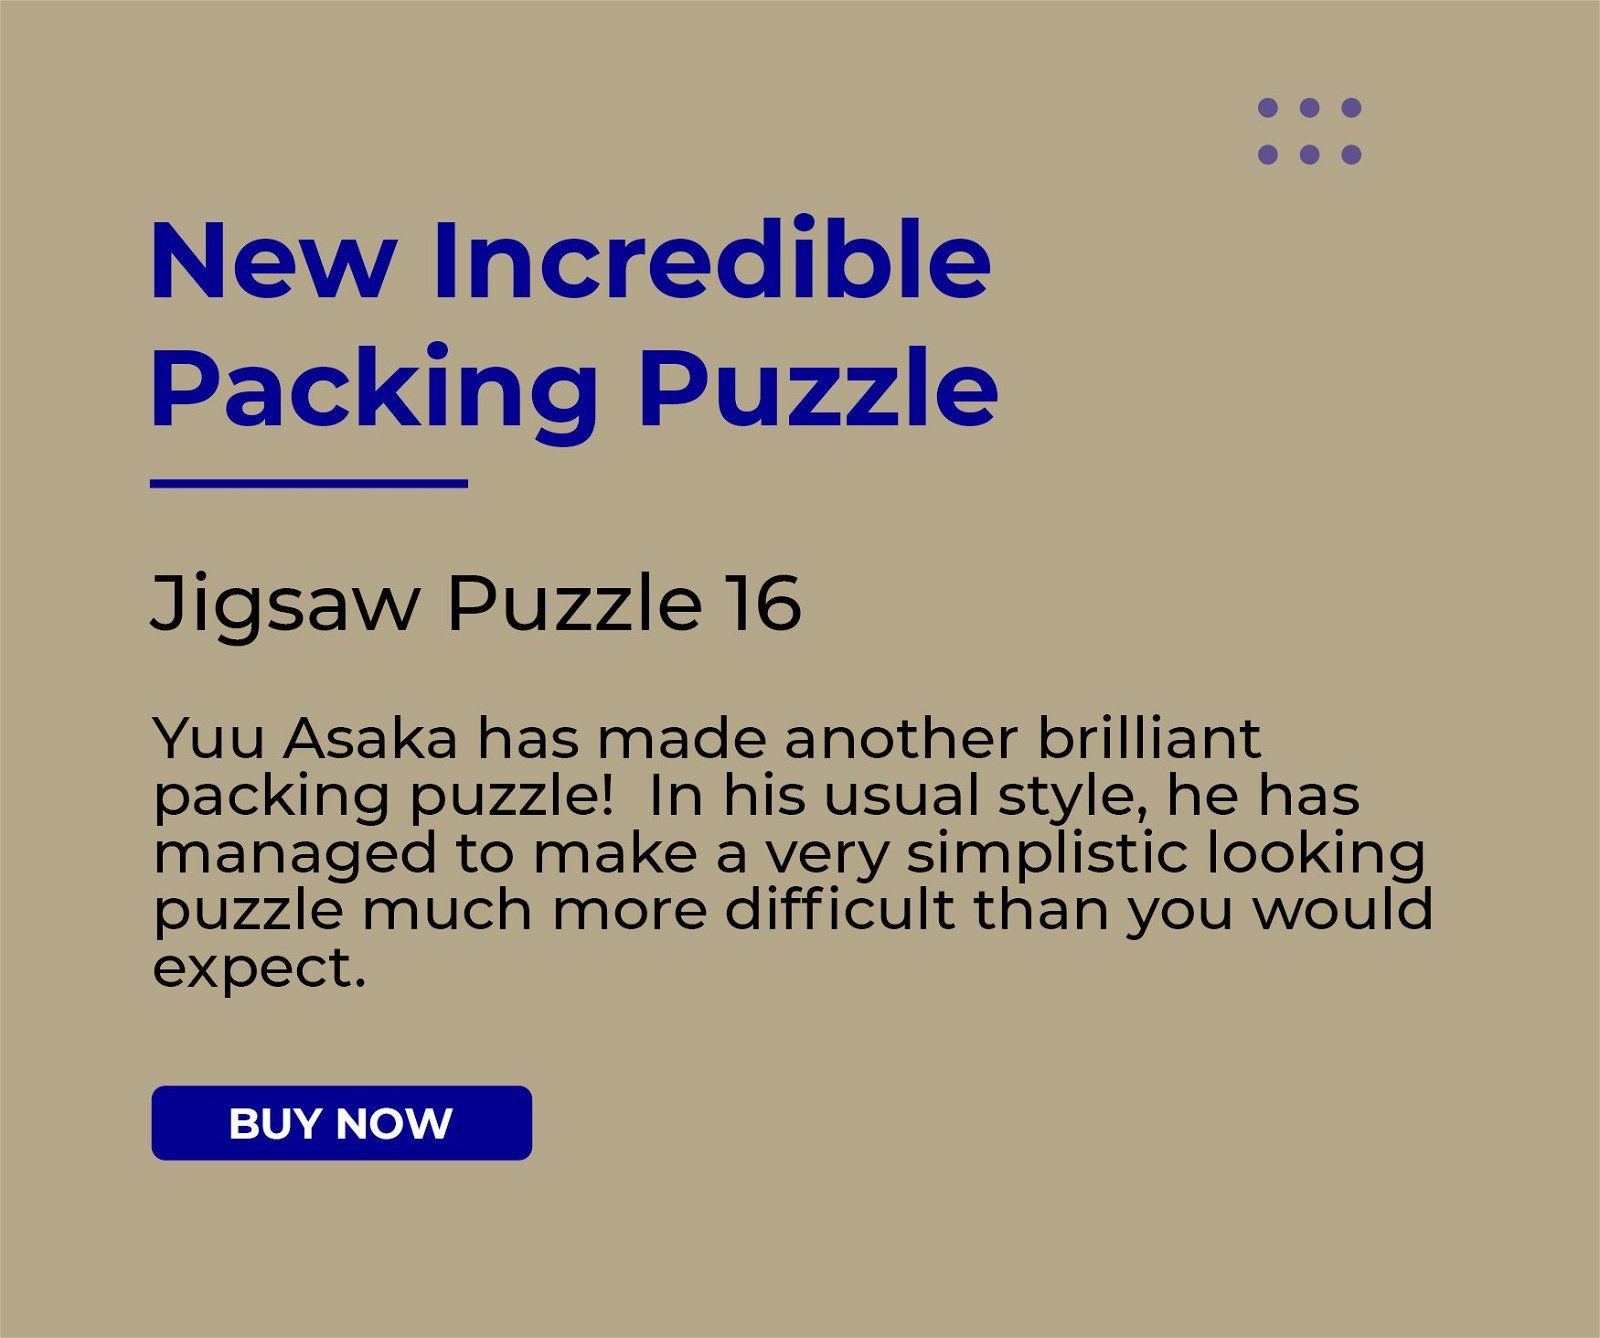 Oleo 10 Puzzle - Original Version, Packing Puzzles